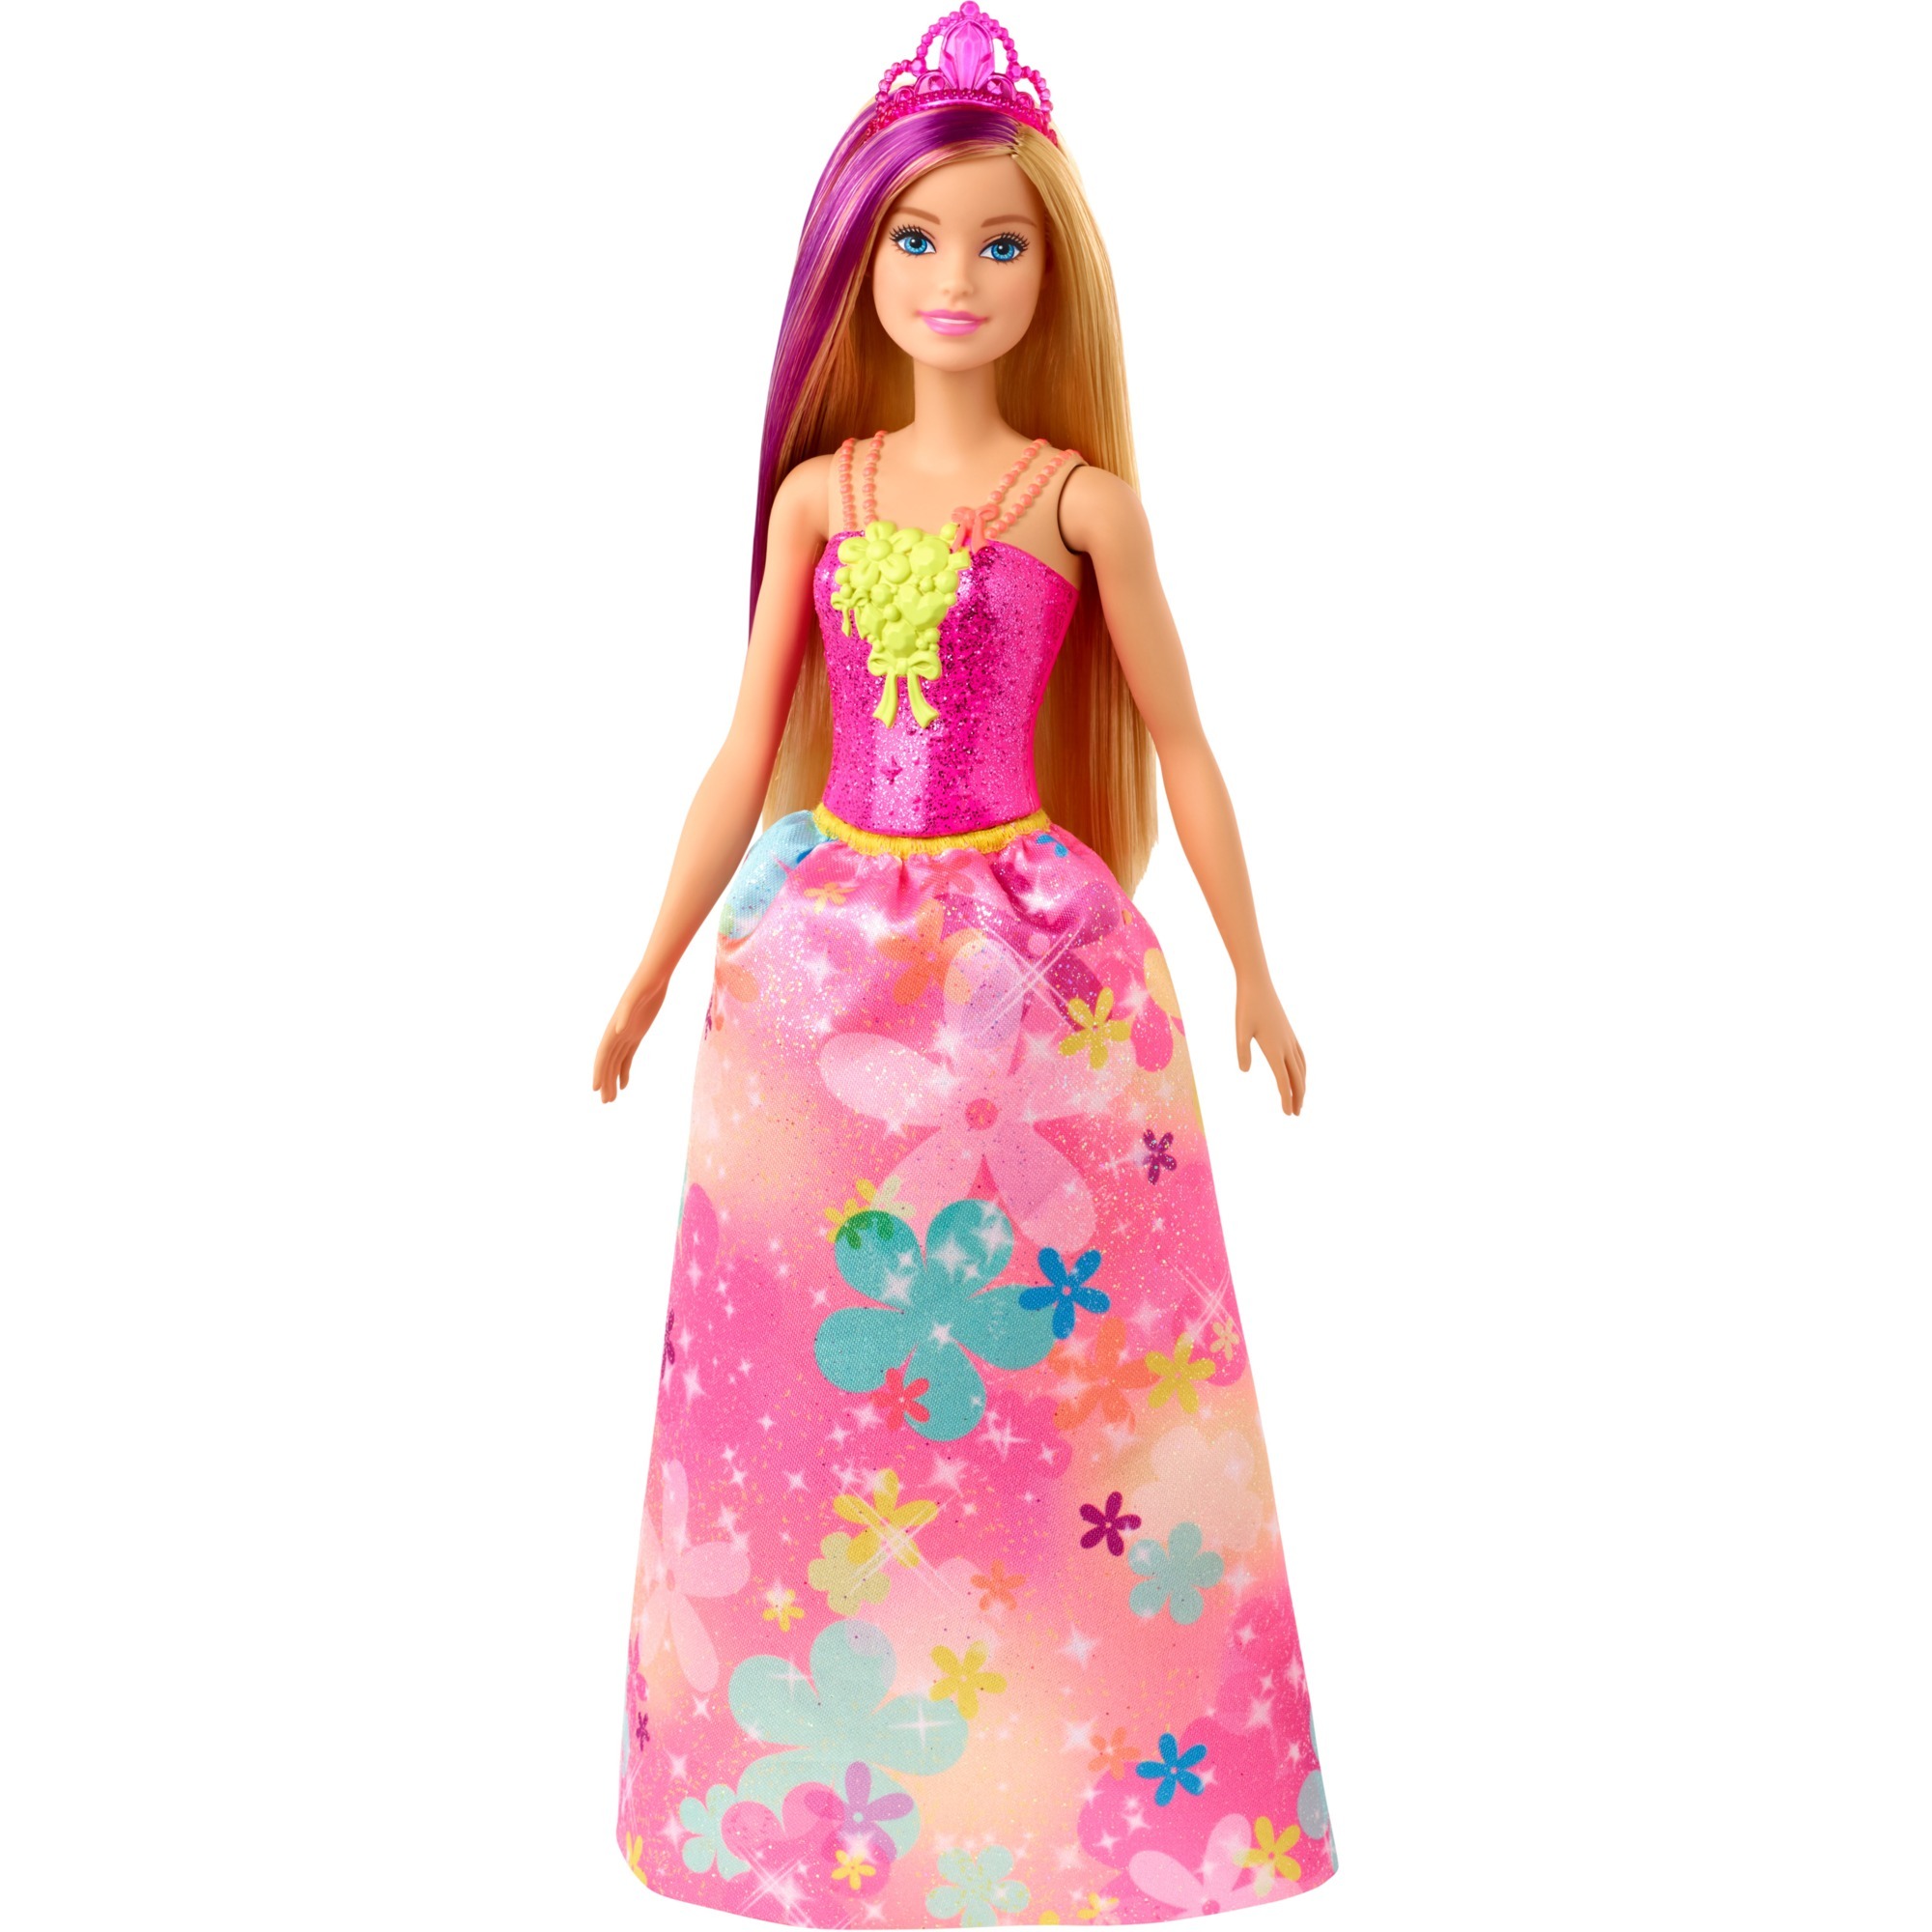 Image of Alternate - Barbie Dreamtopia Prinzessinnen-Puppe online einkaufen bei Alternate